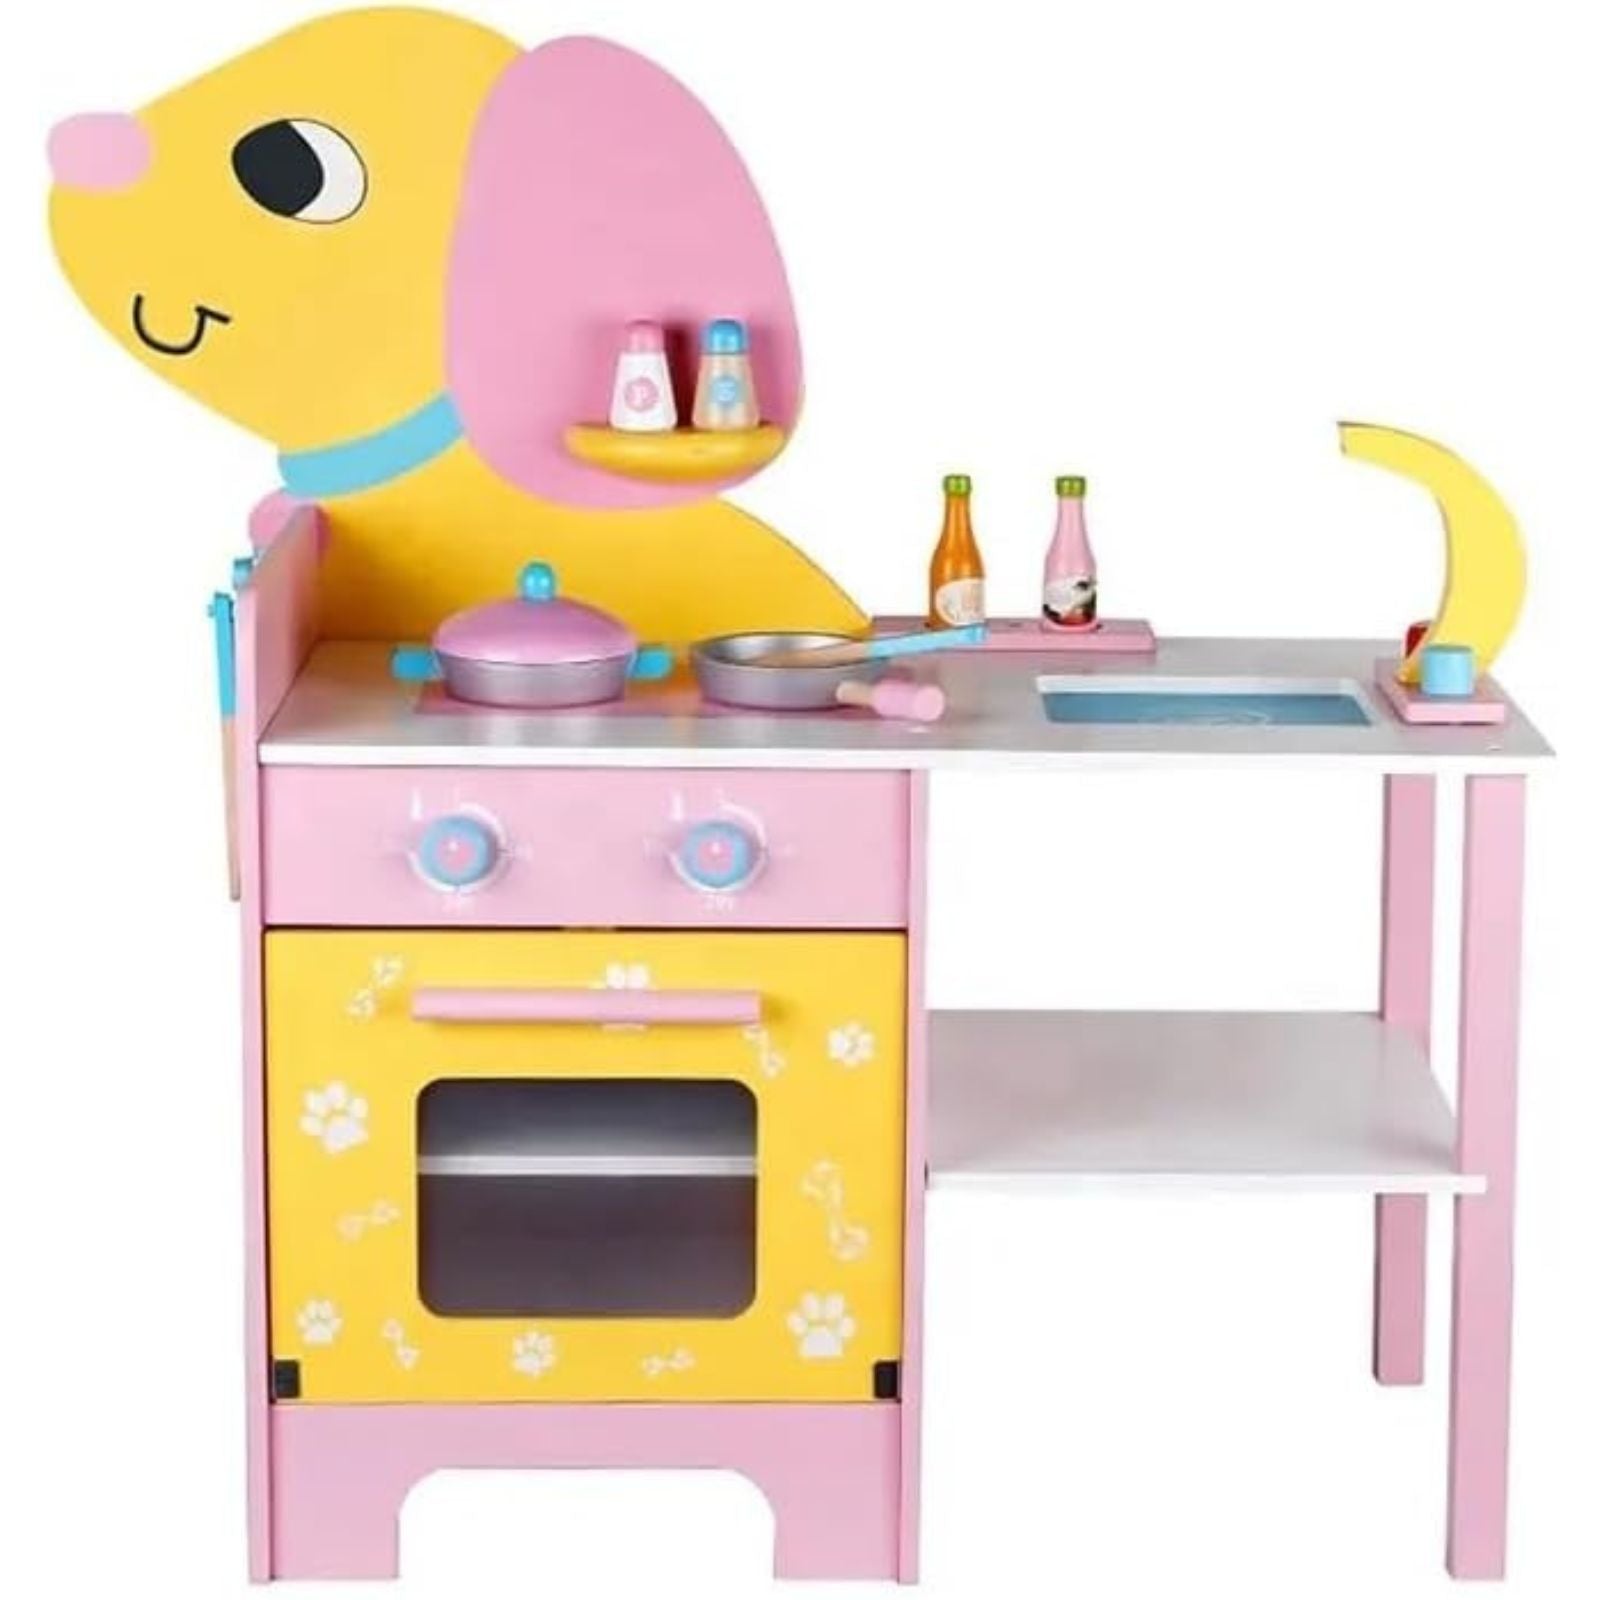 EKKIO Wooden Kitchen Playset for Kids (Puppy Shape Kitchen Set)